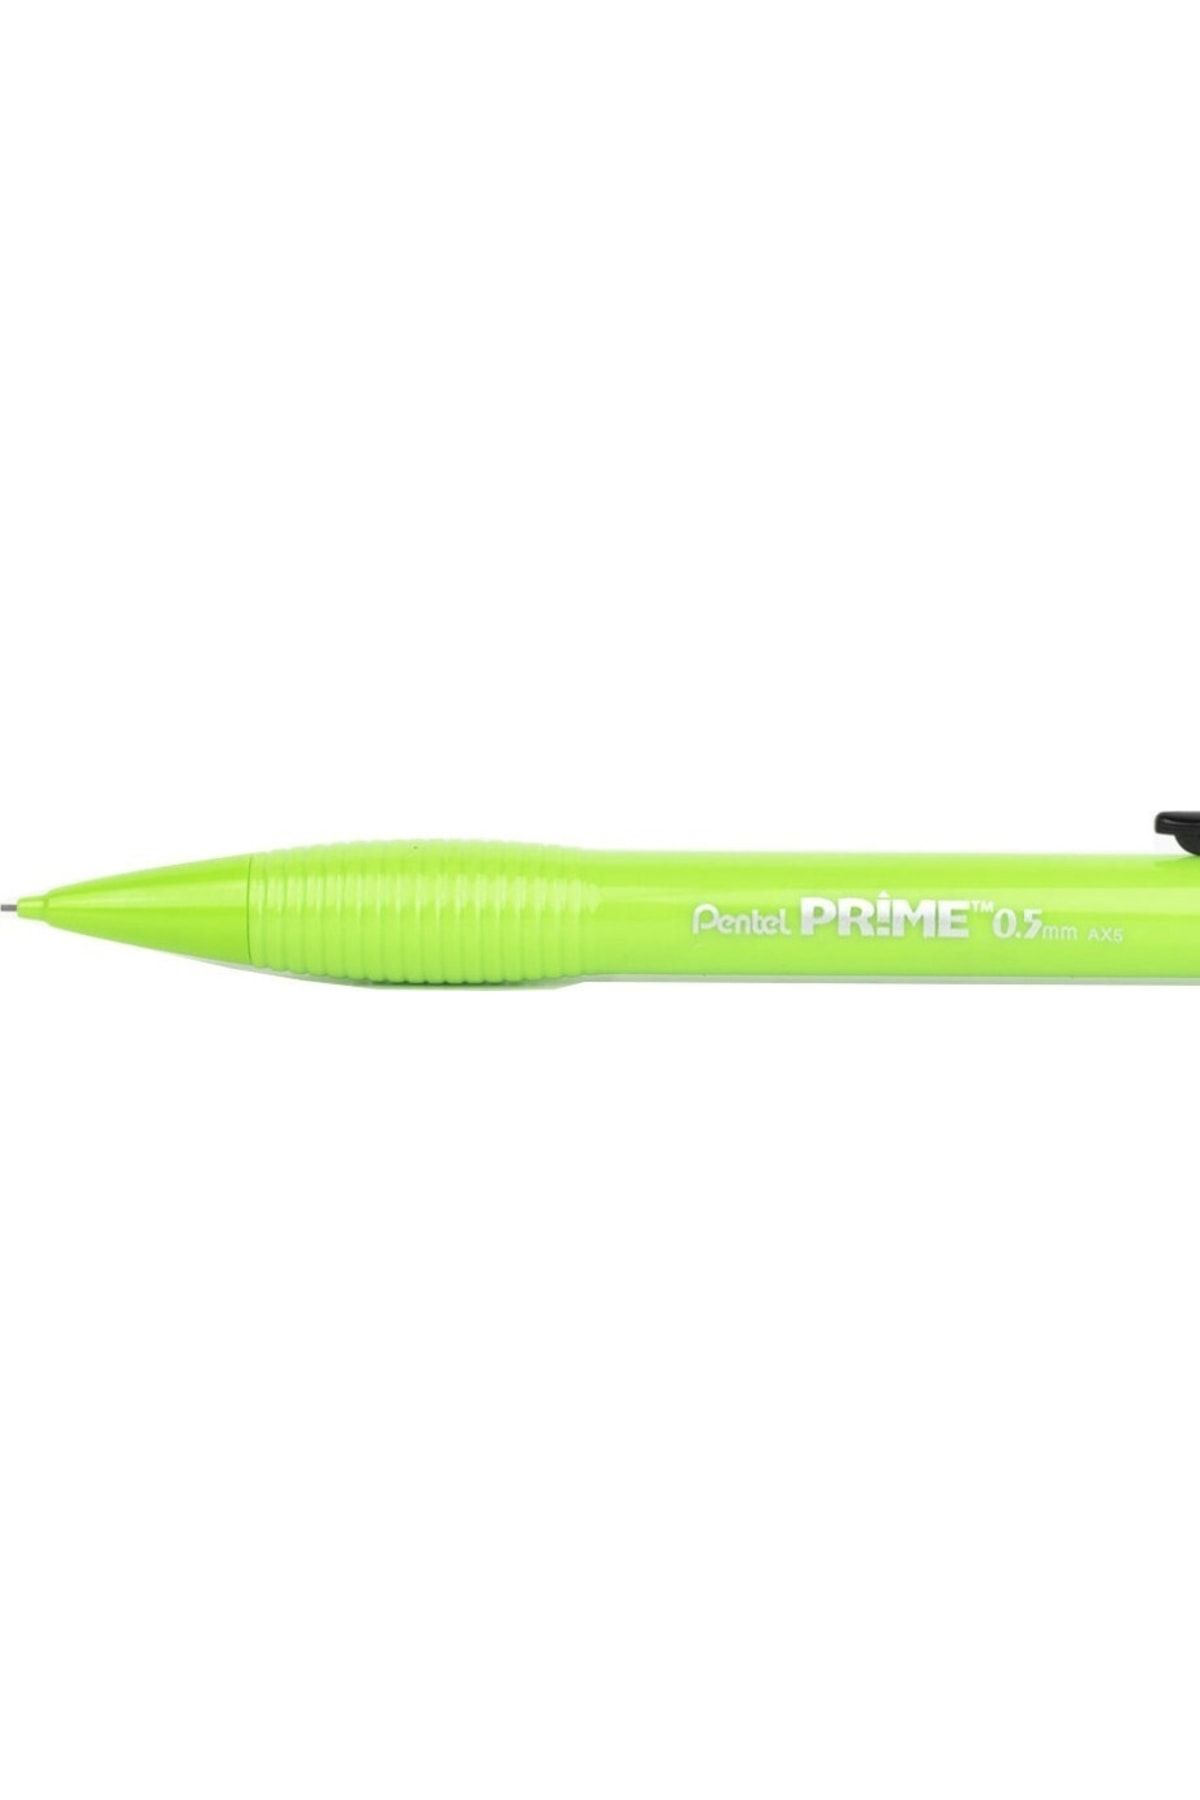 Pentel Prime Ax5 05 Mm Mekanik Kurşun Kalem Yeşil